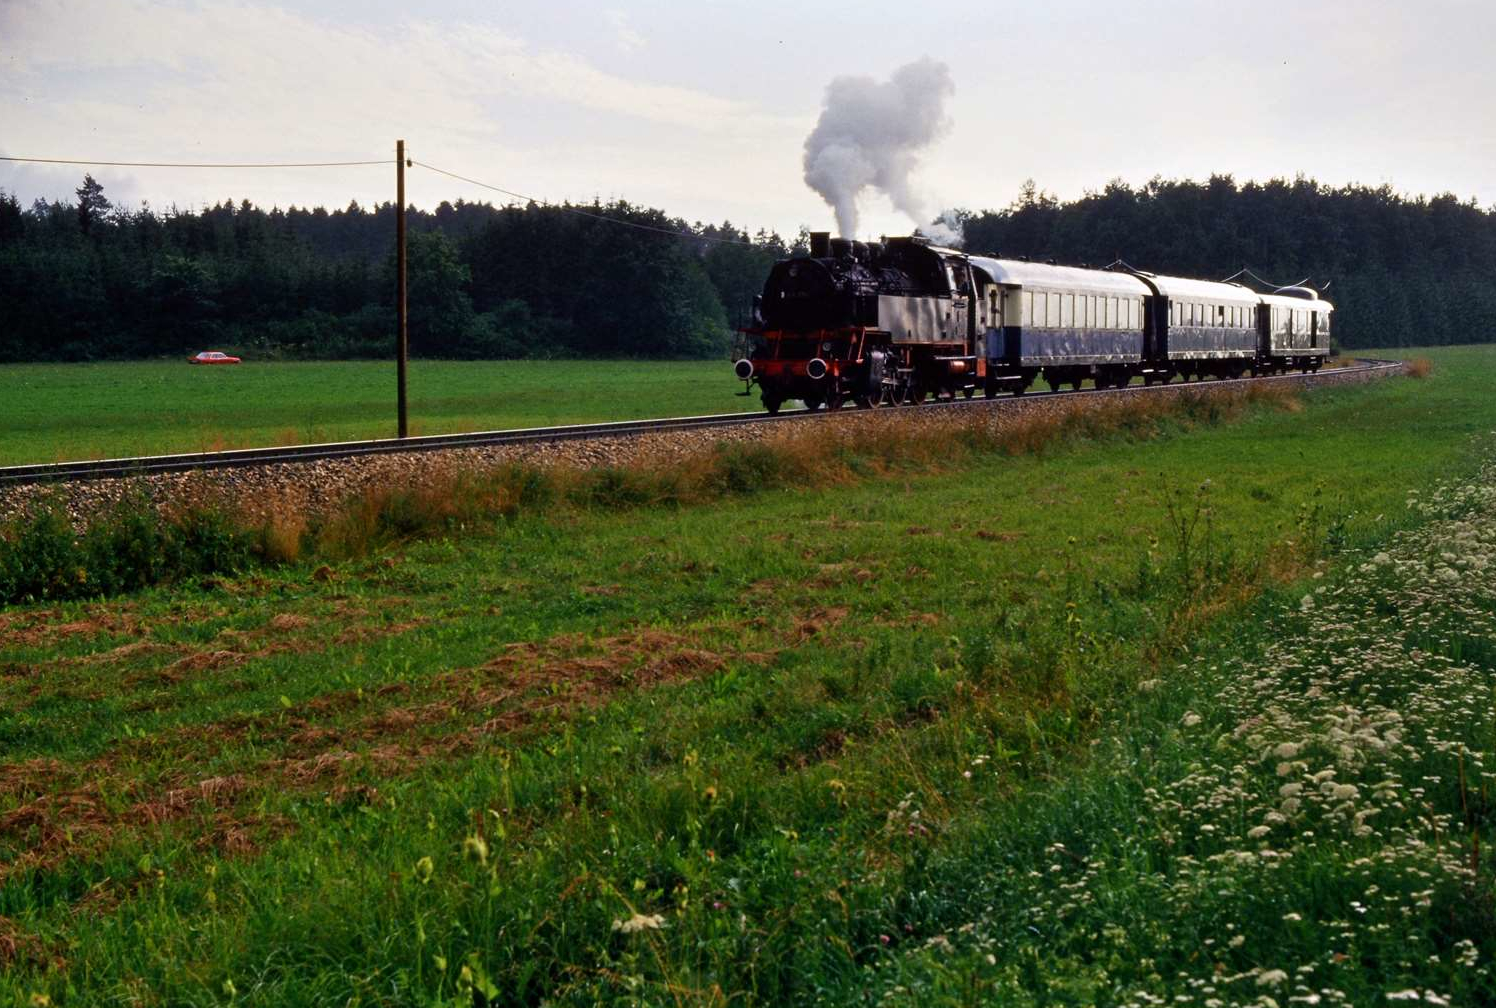 Plandampffahrt auf der Hohenzollerischen Landesbahn mit EFZ-Dampflok 64 289.
Datum: 22.07.1987